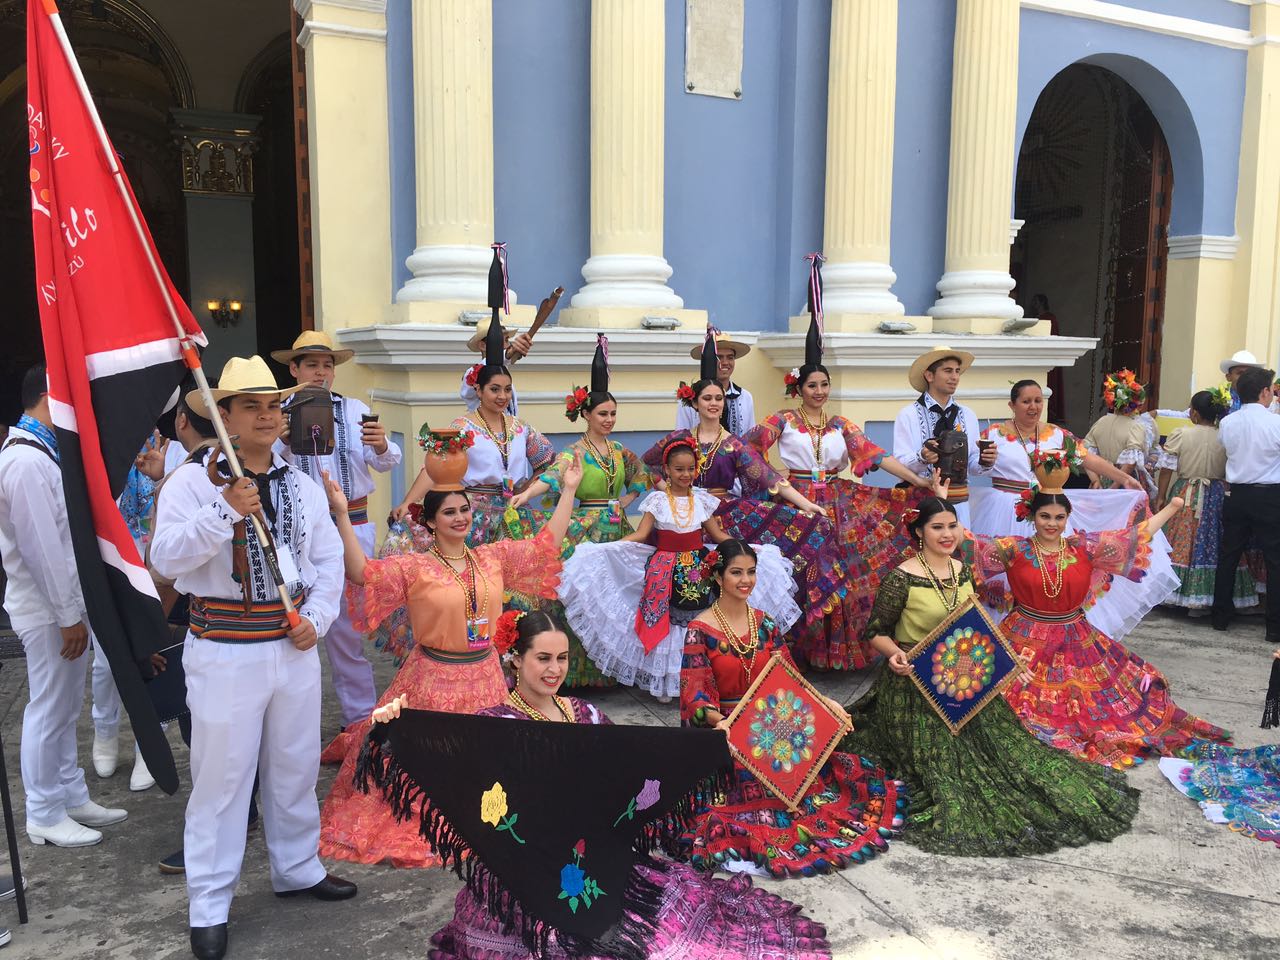 Inicia el Festival Internacional del Folclore Córdoba 2017